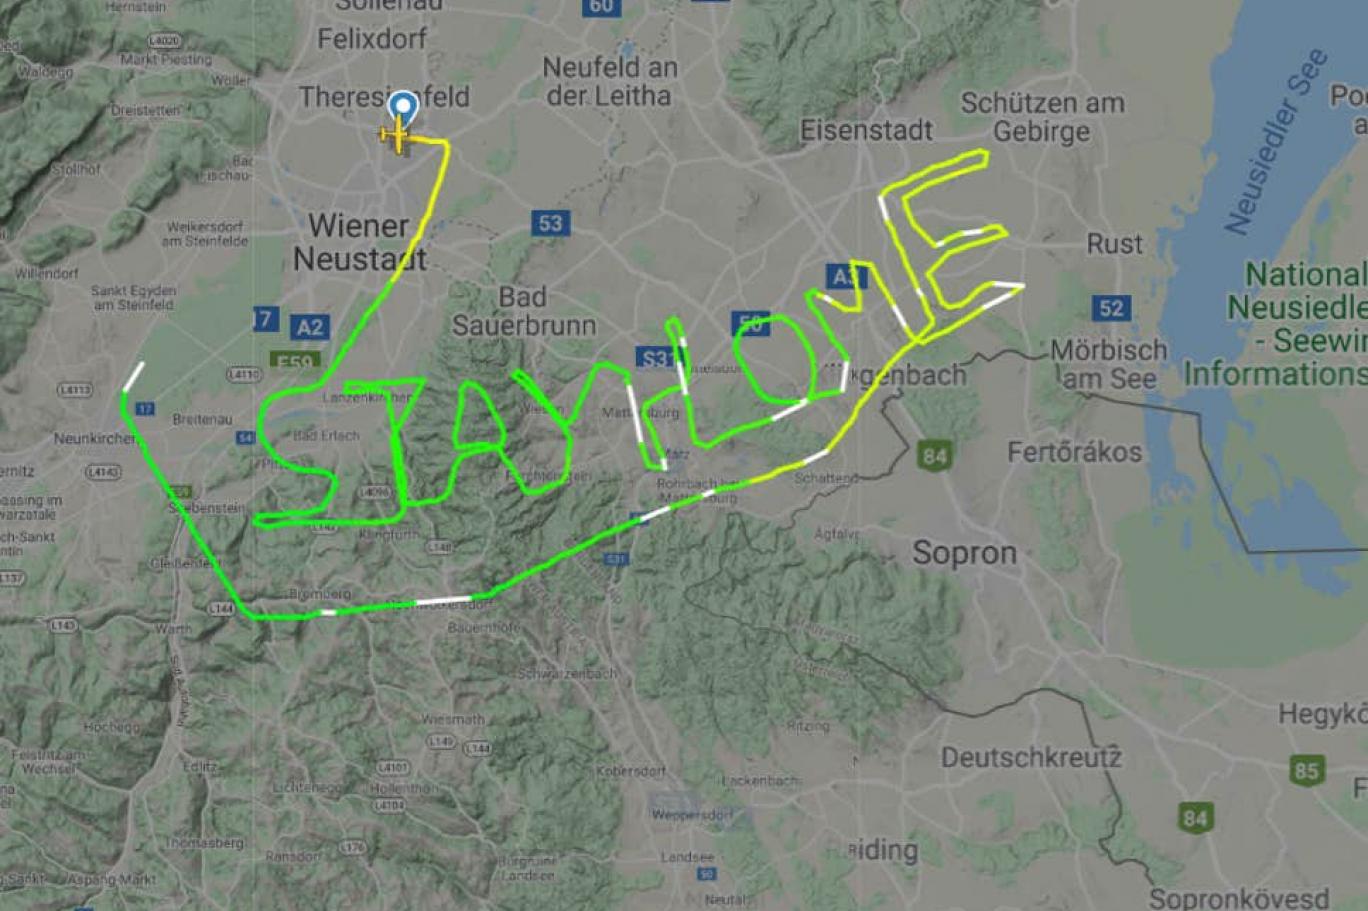 Avusturyalı pilot uçuş rotasıyla gökyüzüne "Evde kal" yazdı